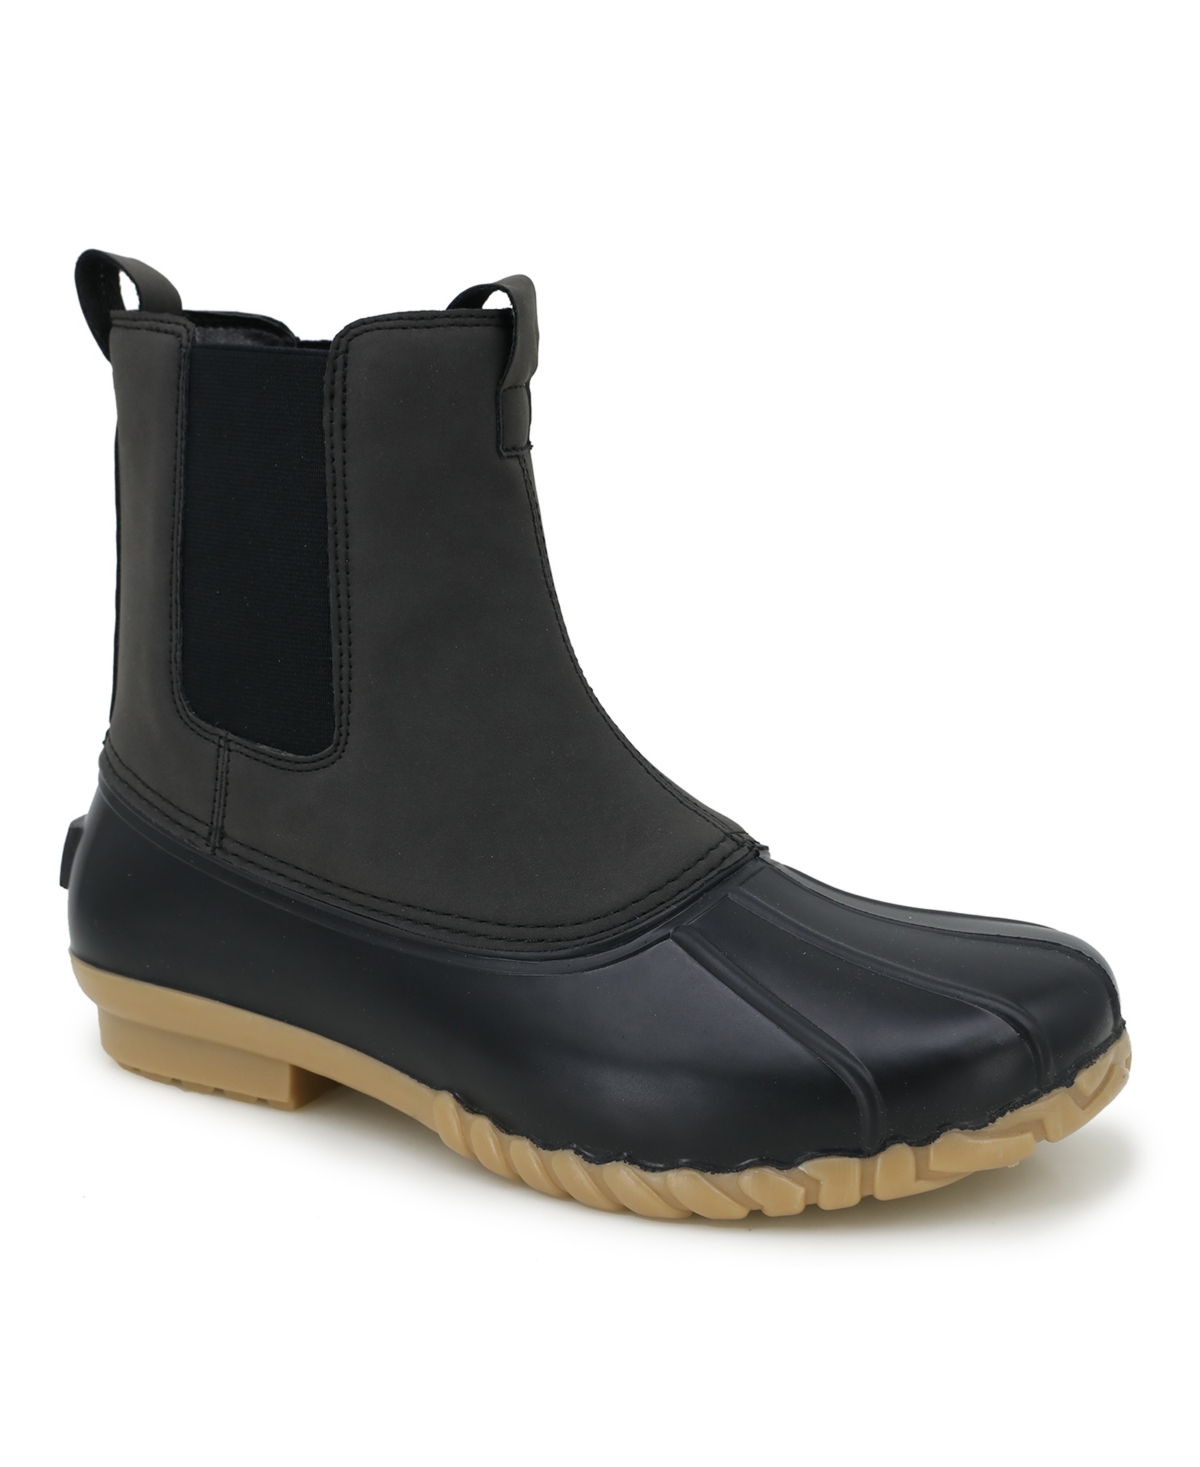 Jbu Men's Milton Water-resistant Duck Boot In Black,gray